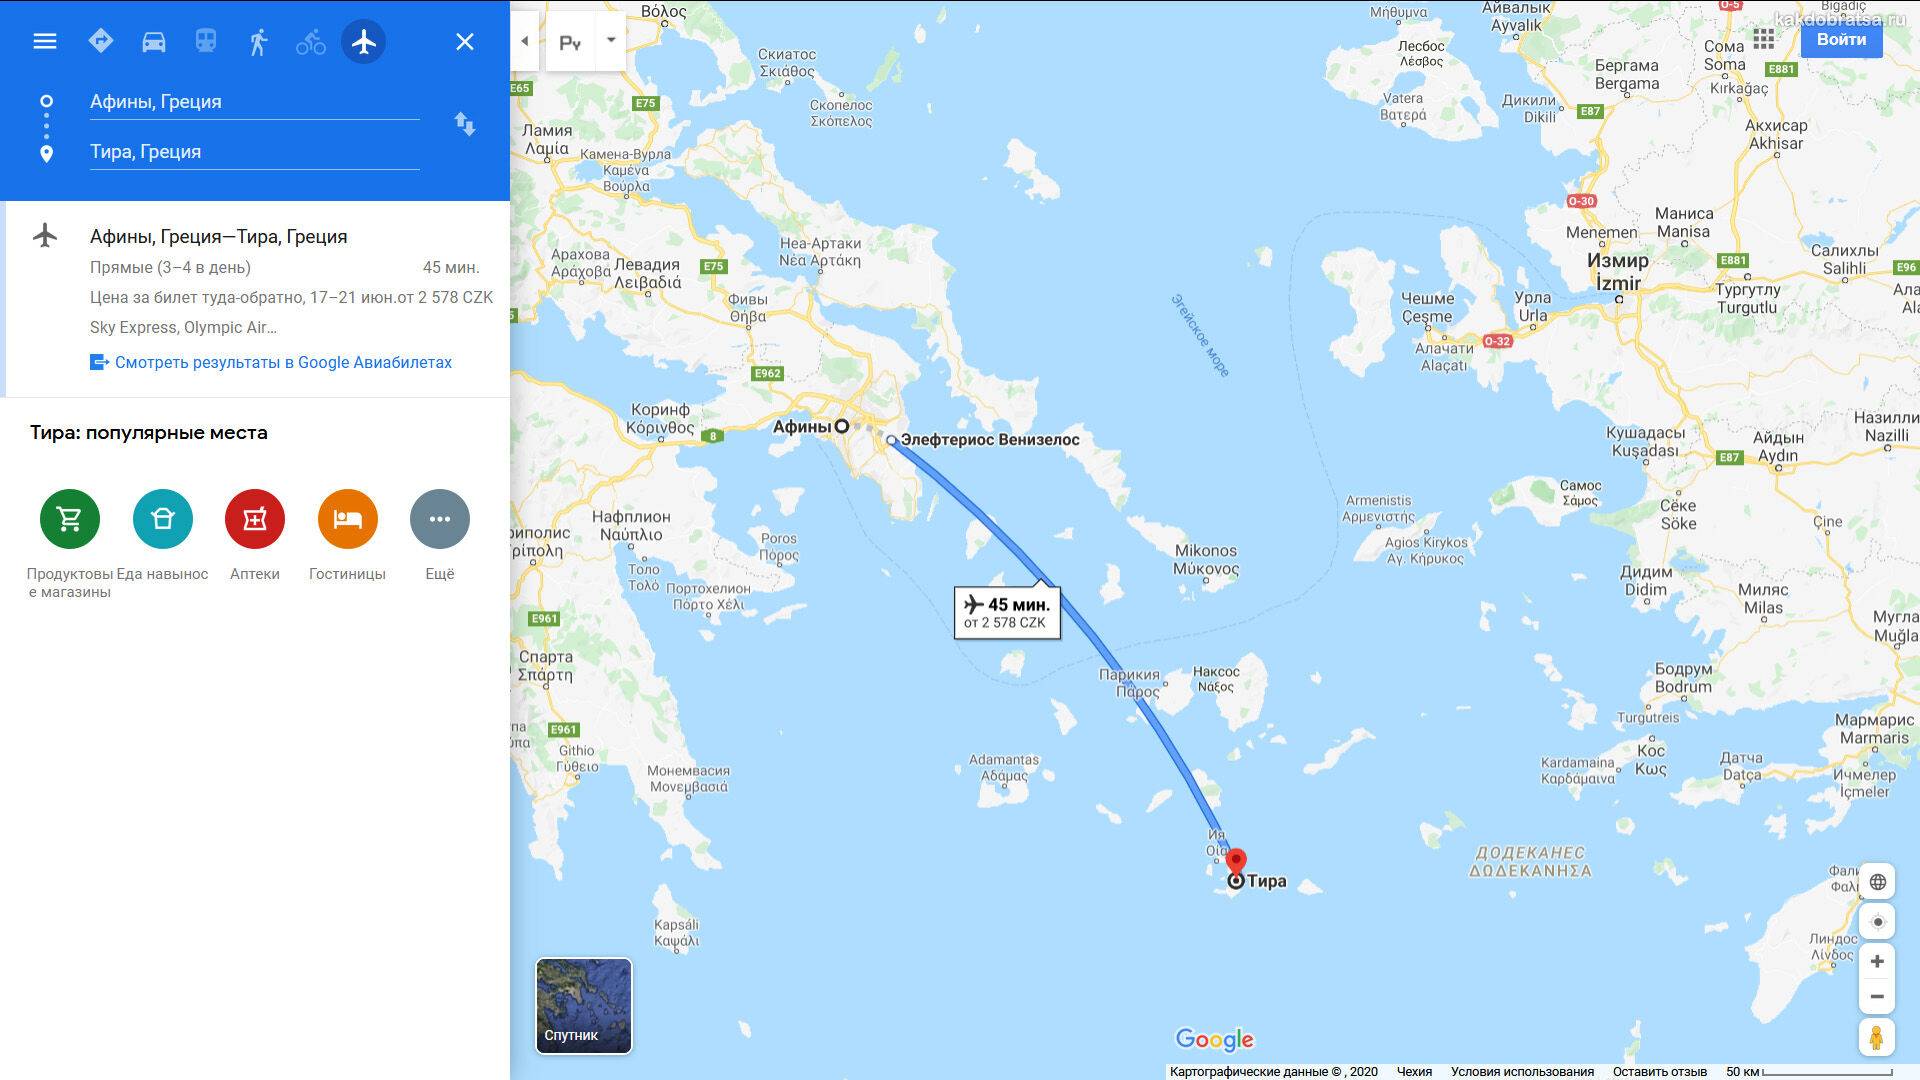 Крит – санторини: с острова на остров